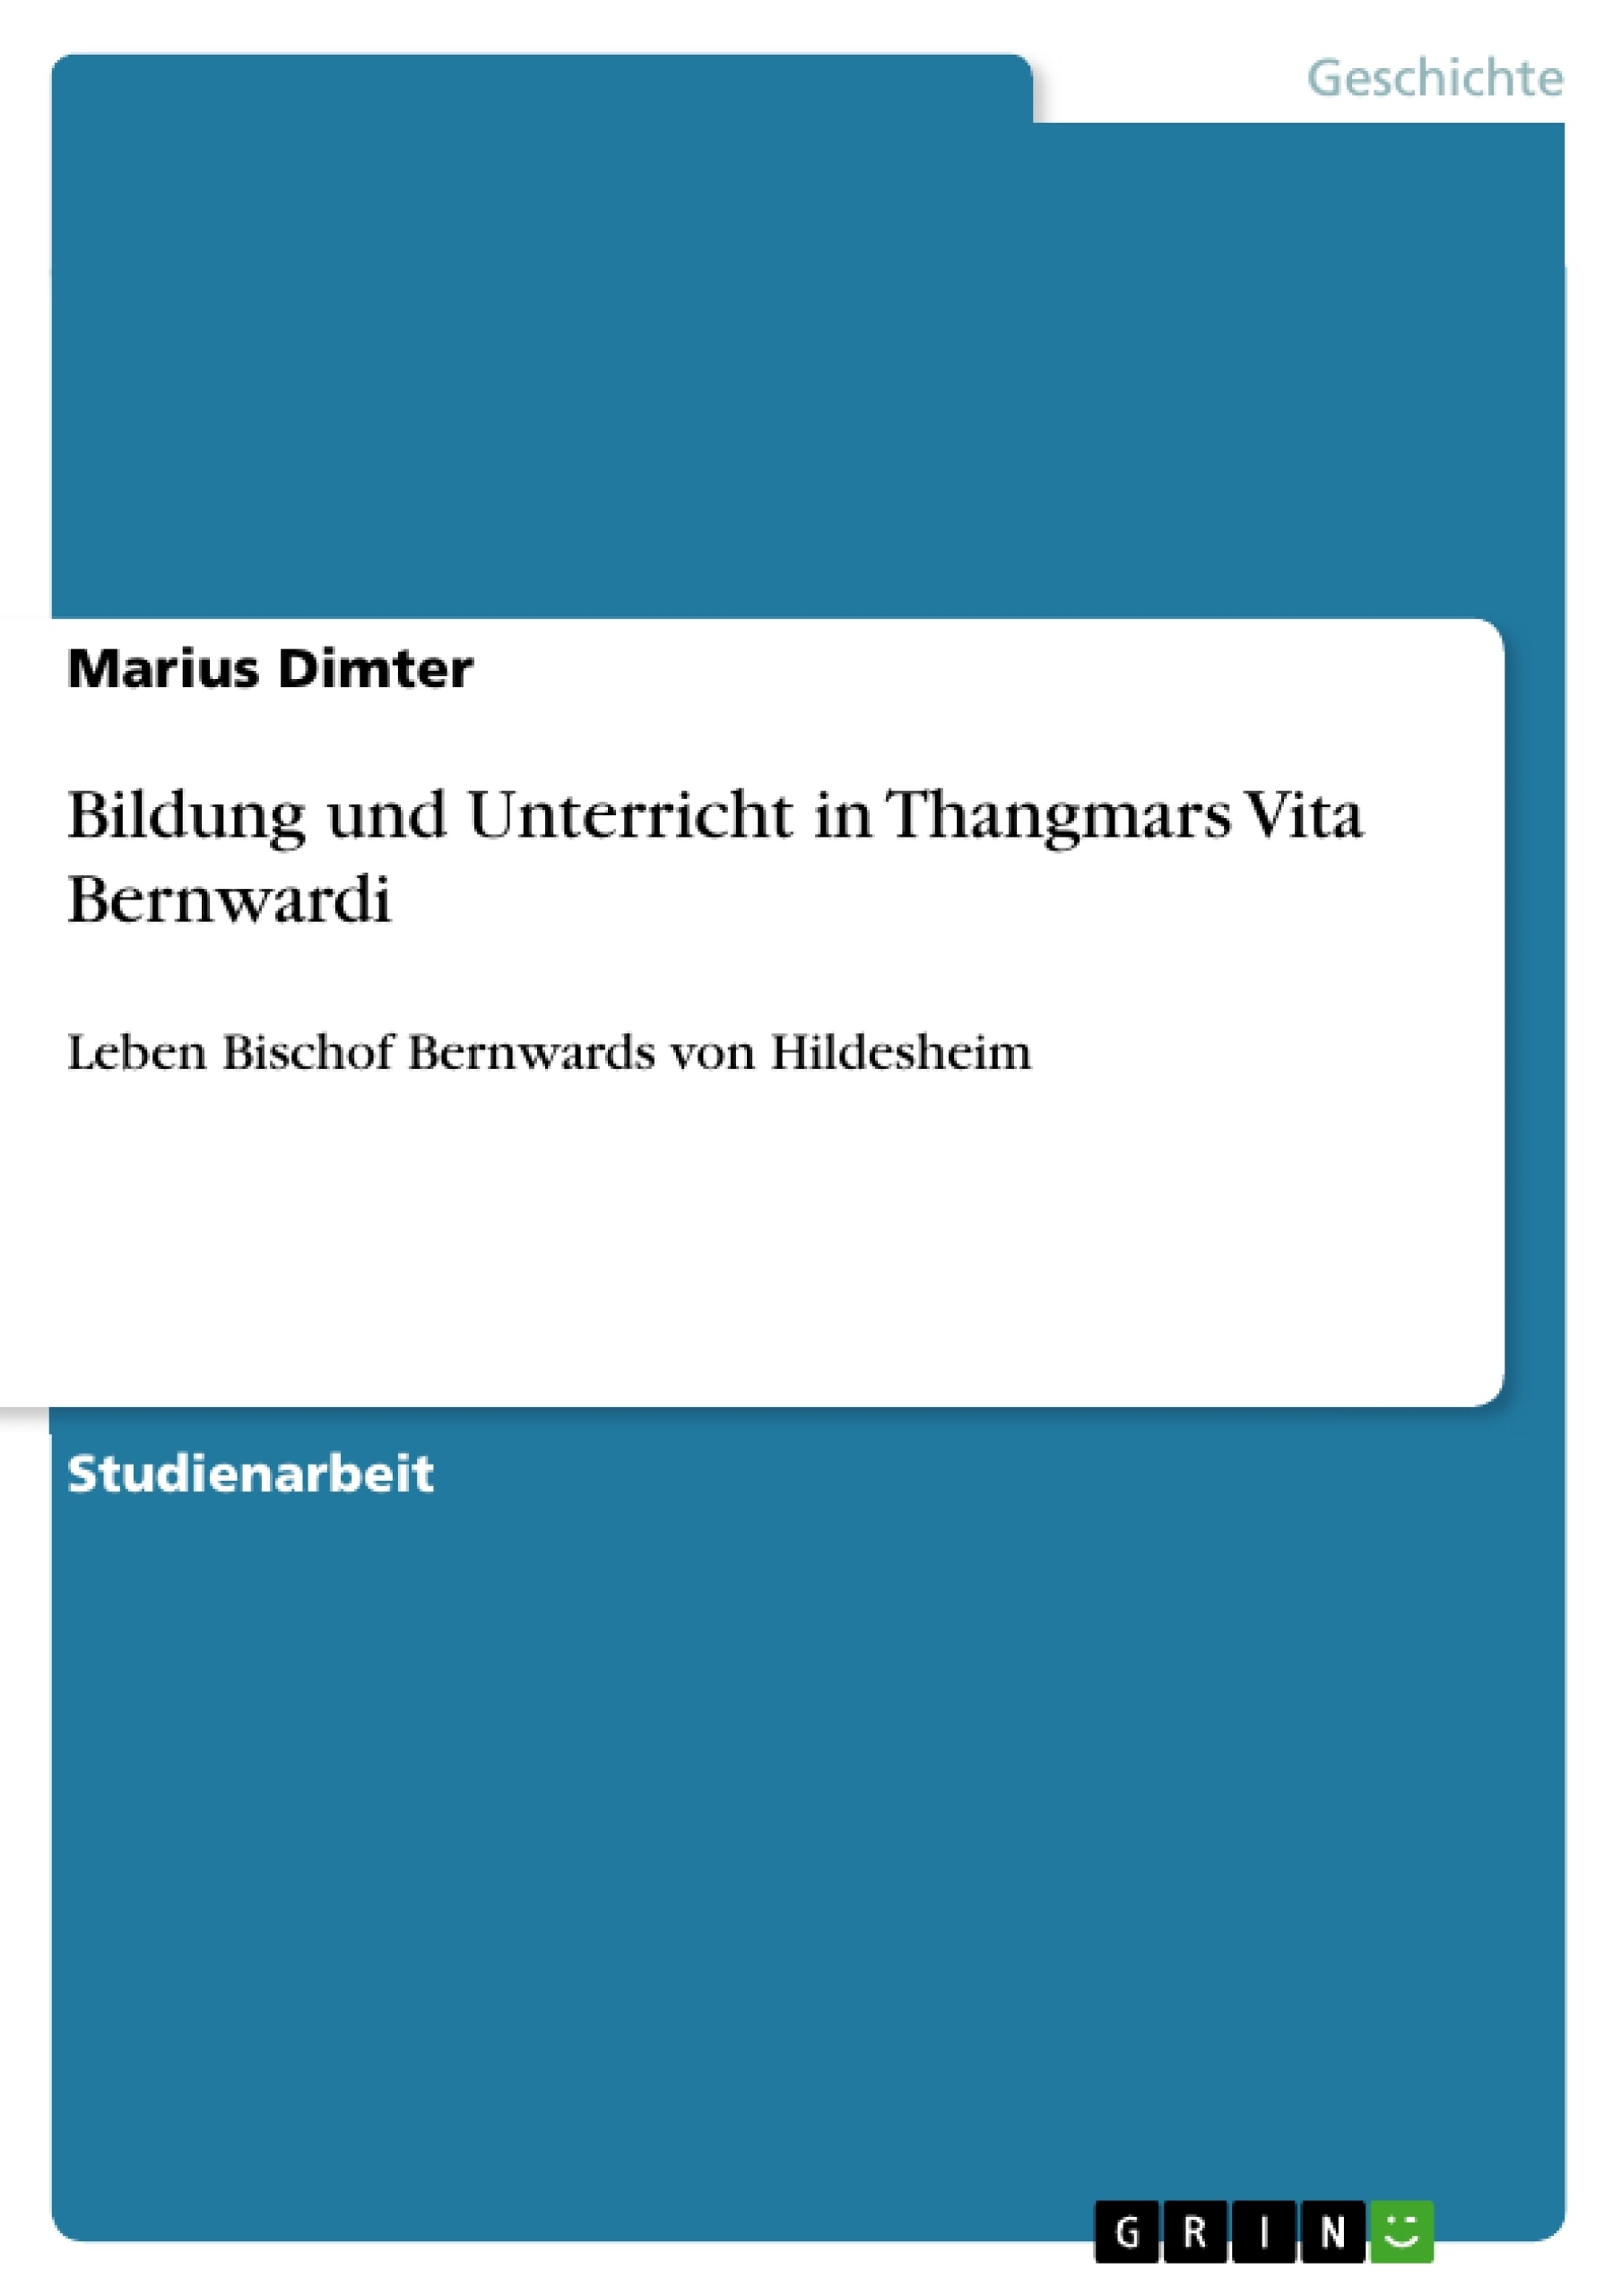 Título: Bildung und Unterricht in Thangmars Vita Bernwardi